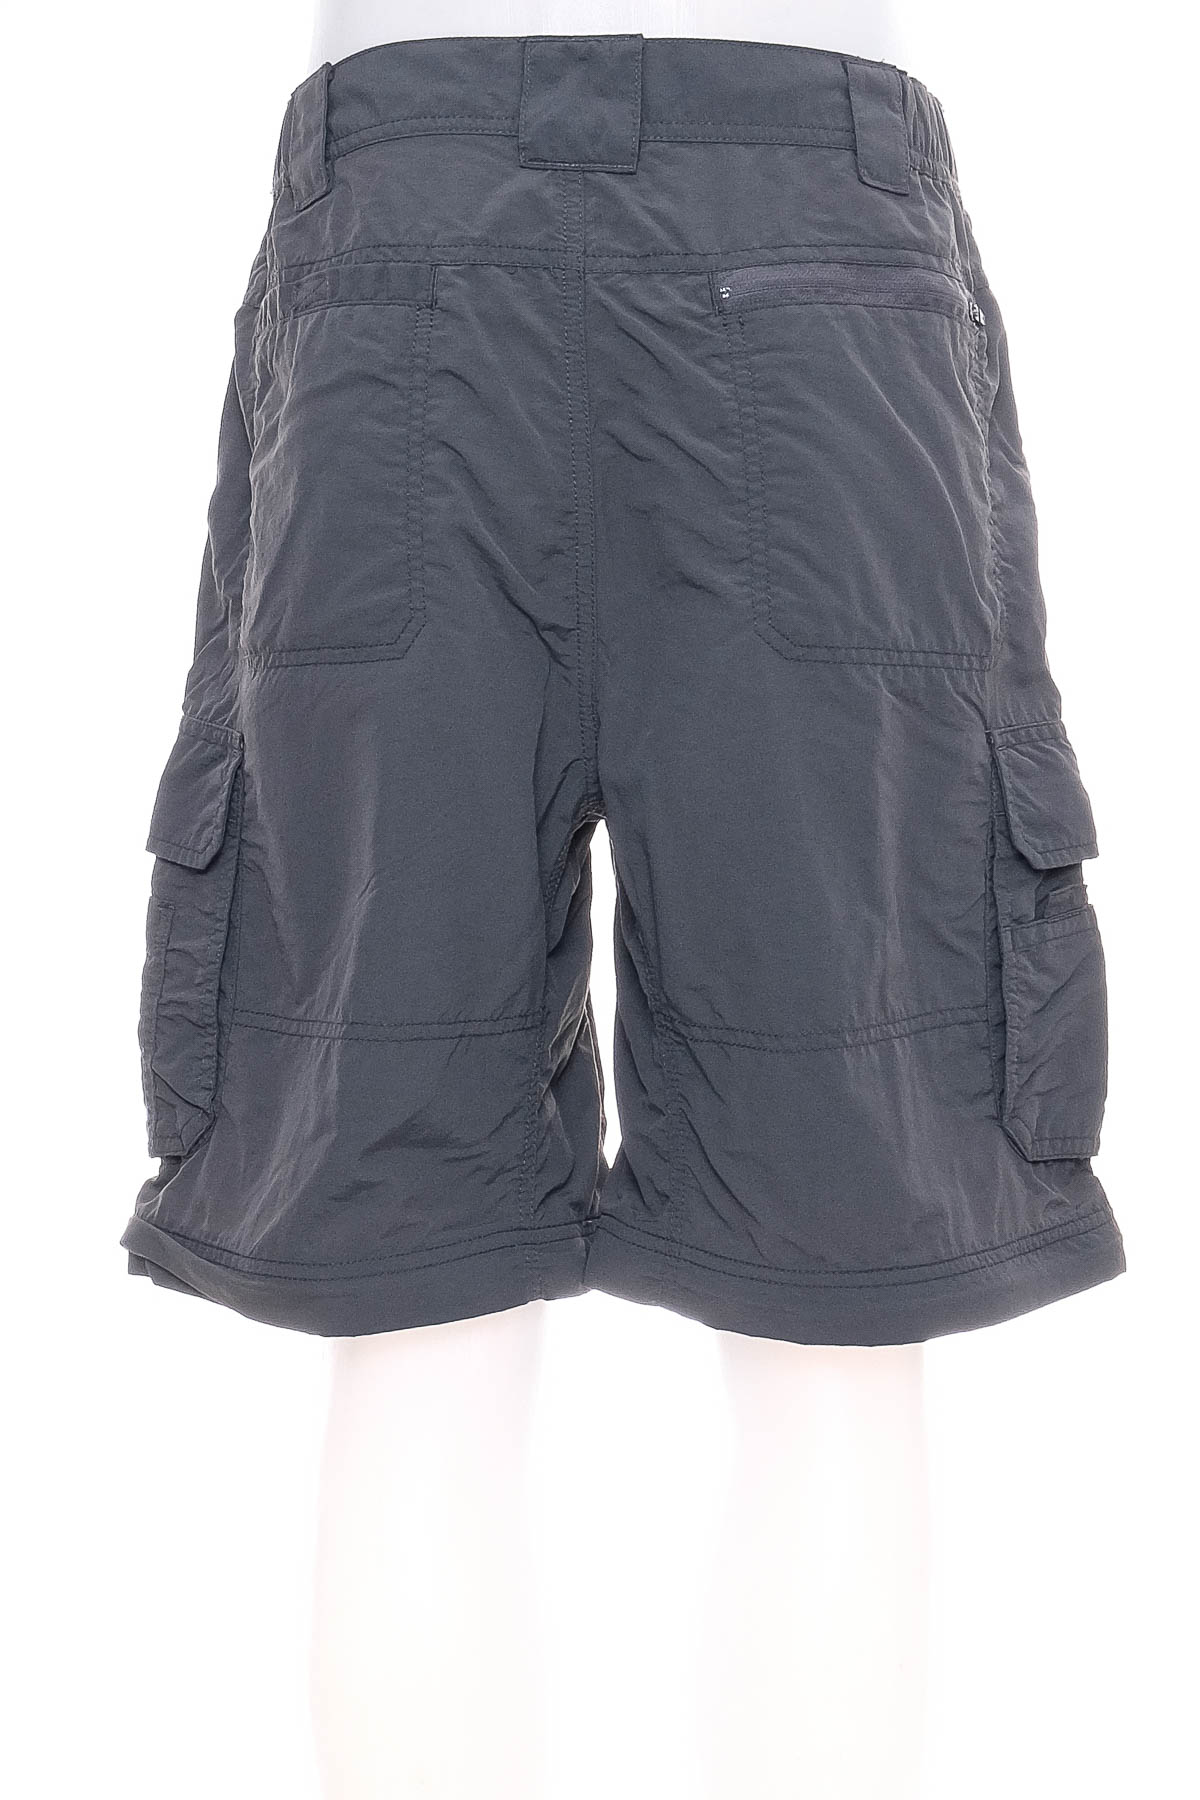 Men's shorts - Alpine Design - 1